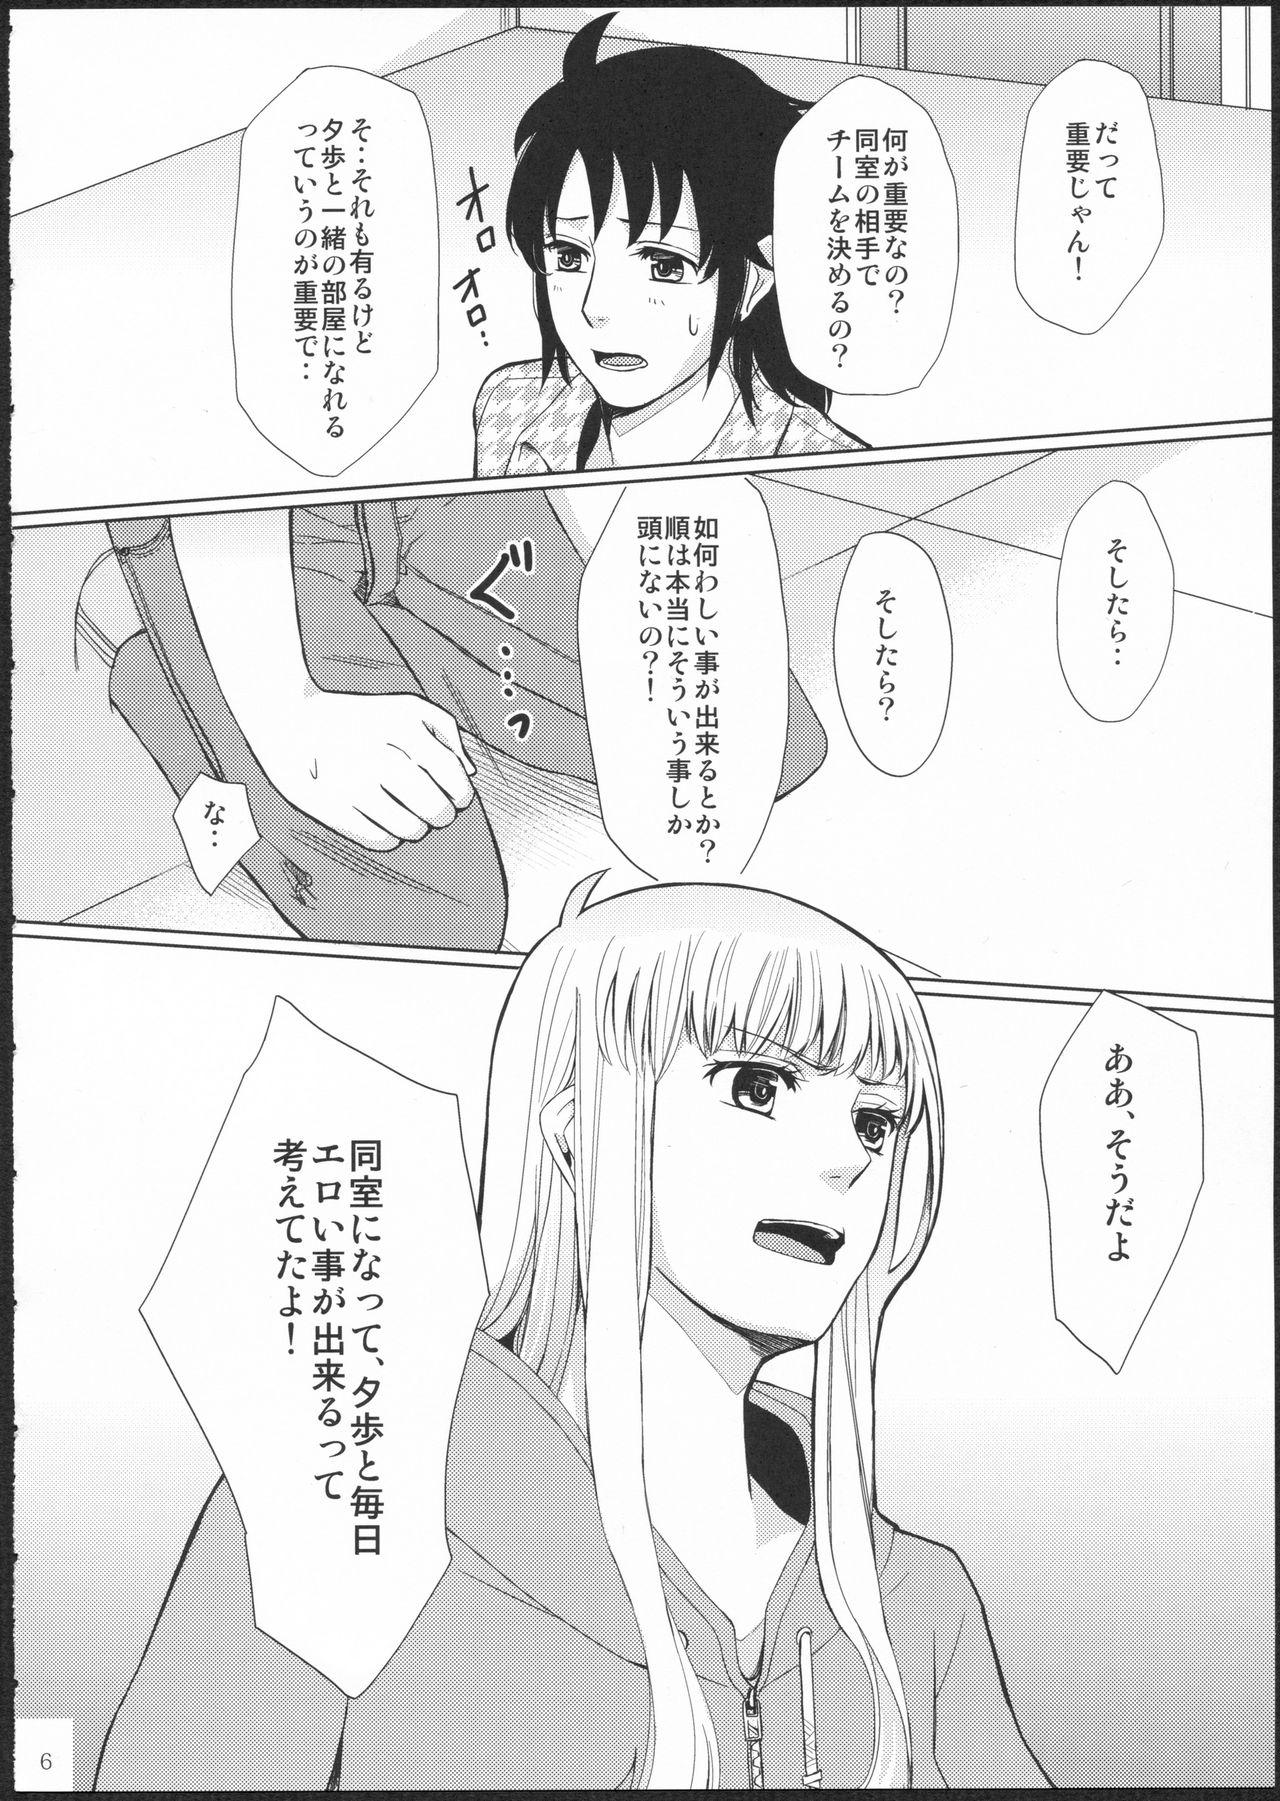 (GirlsLoveFestival11) [No.3 (Kamonasu, Sakuraba, Yuyuki)] METEORA (Hayate x Blade) 4